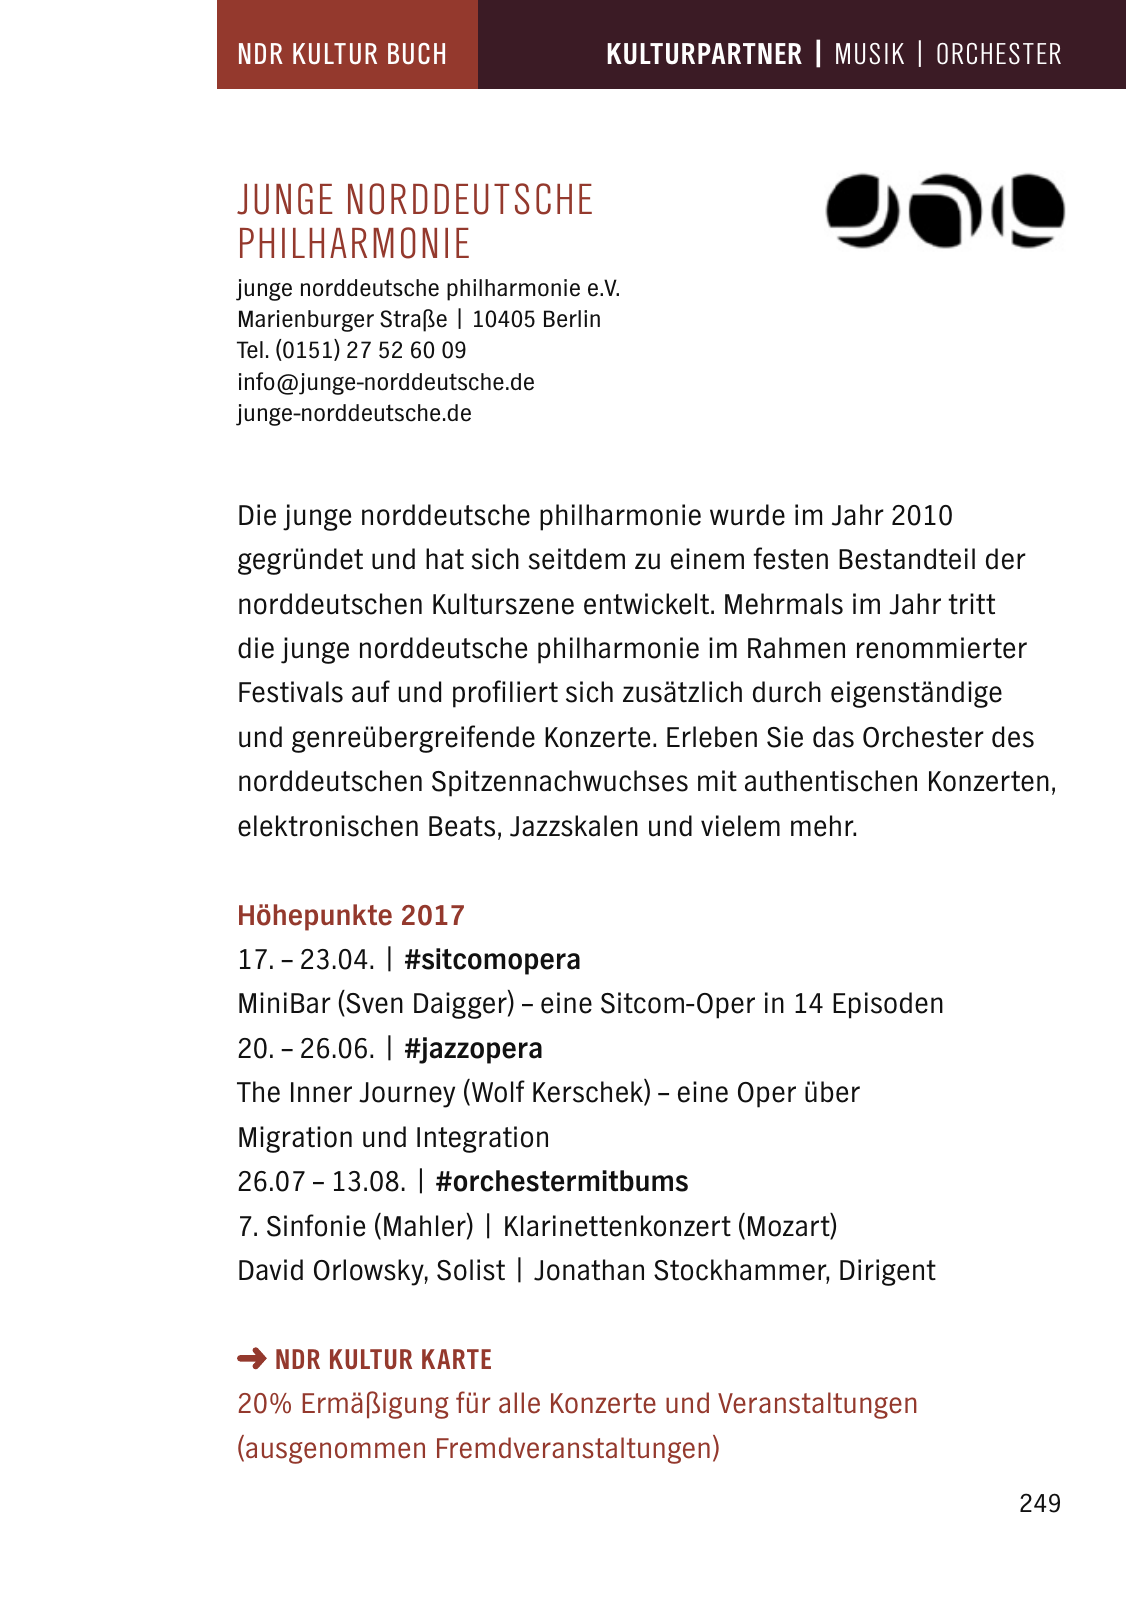 Vorschau NDR Kultur Buch 2017 Seite 251